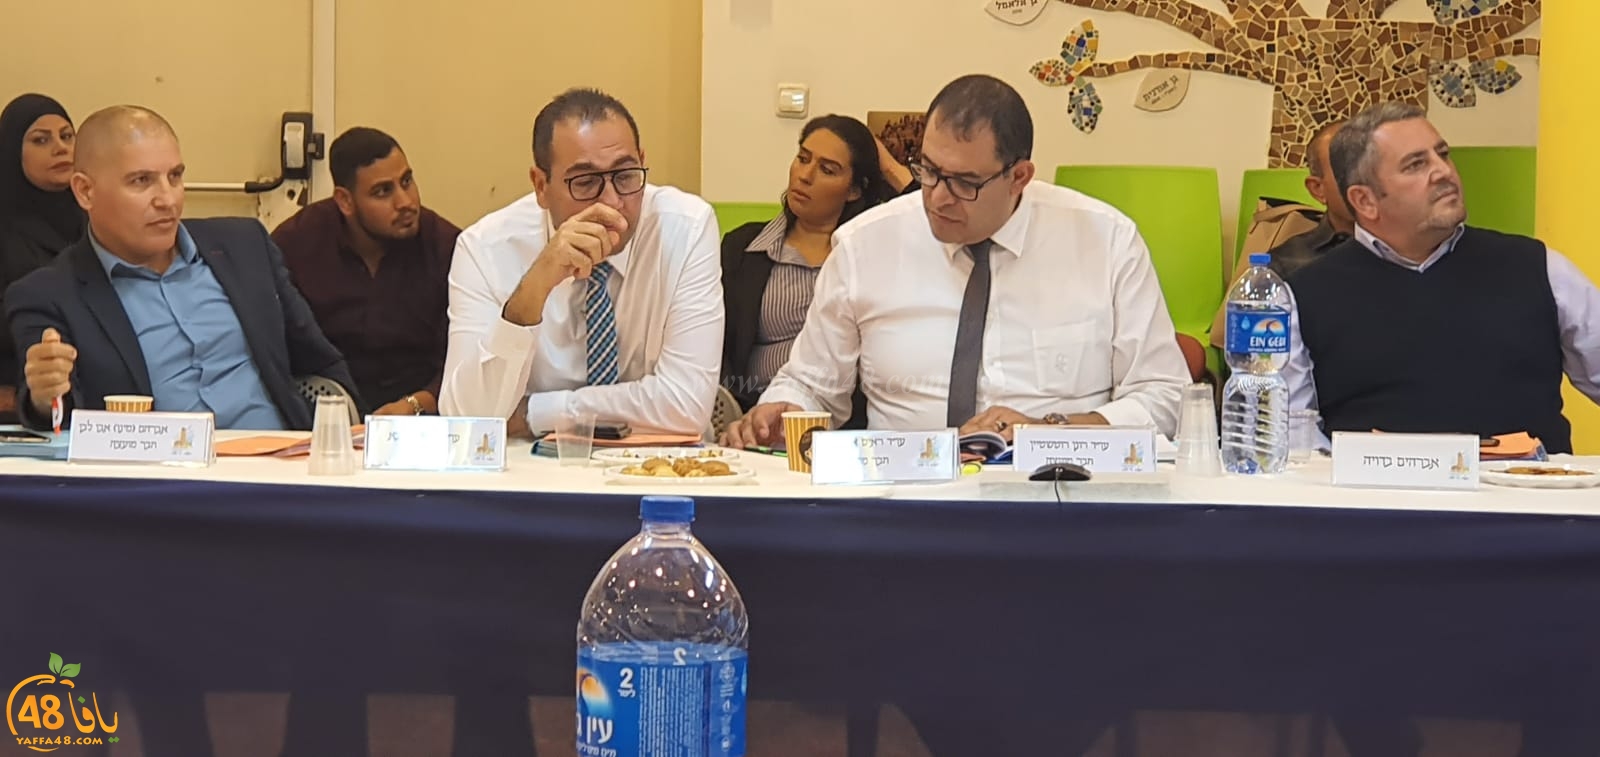  فيديو: السيد ابراهيم بدوية يتولى عضوية المجلس البلدي بالرملة خلفاً للسيد نايف ابو صويص